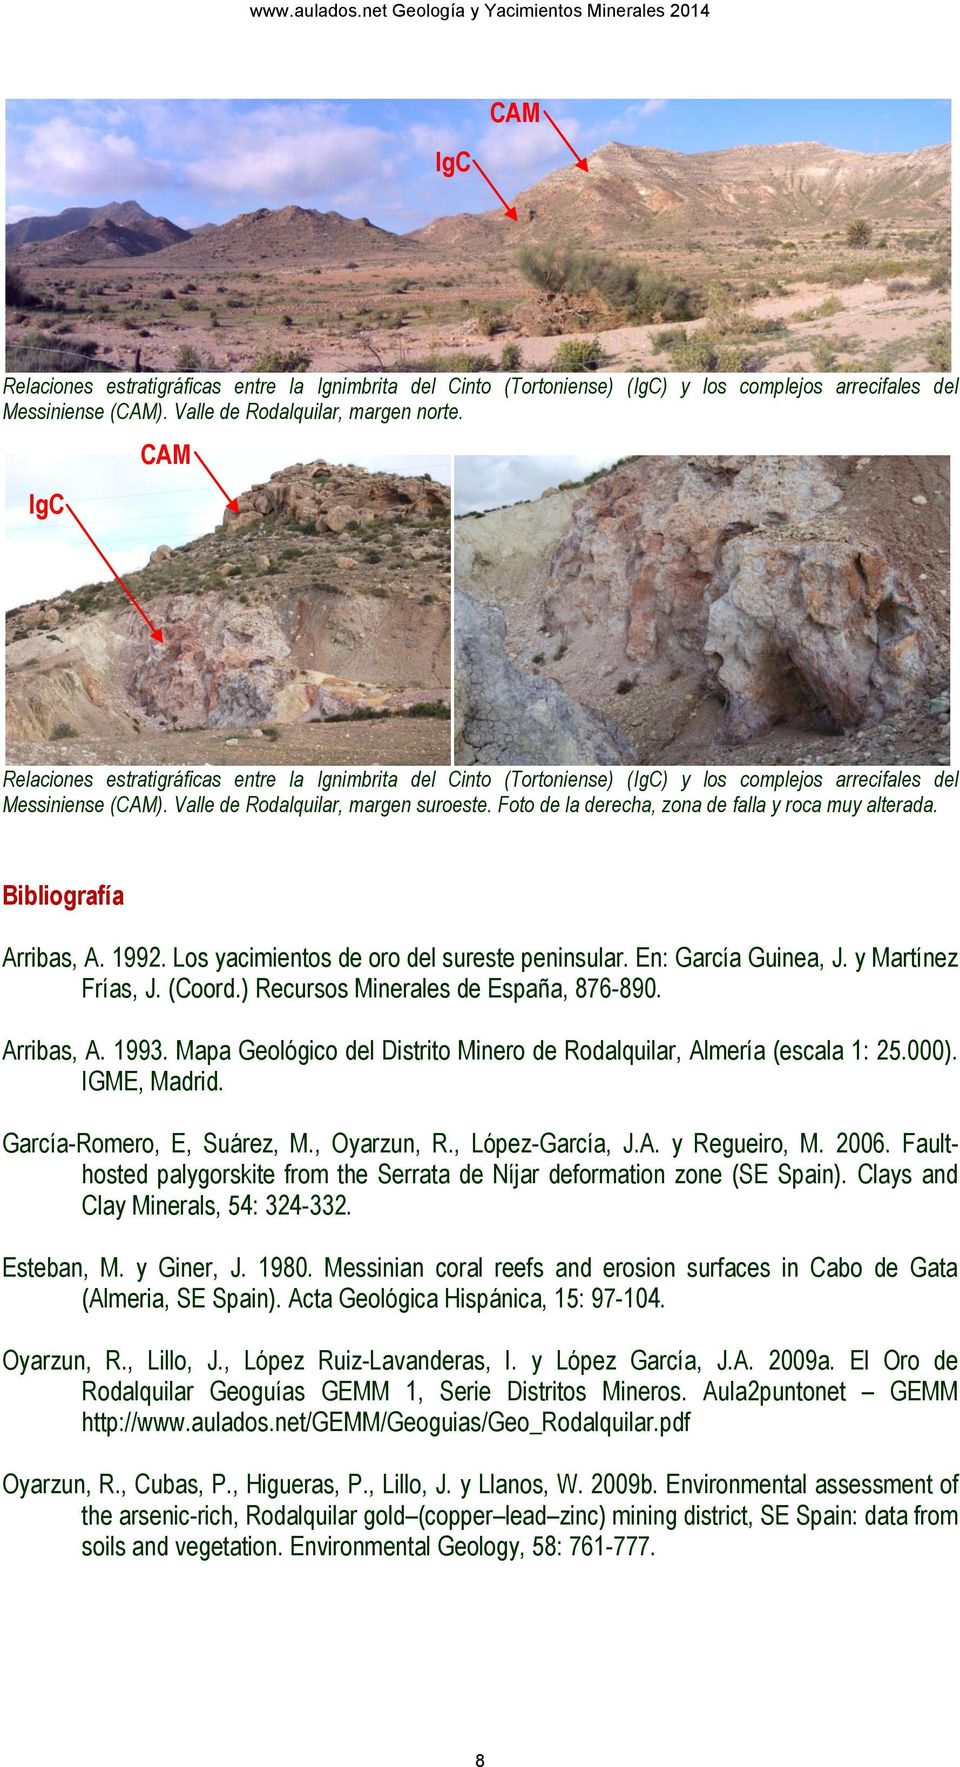 Foto de la derecha, zona de falla y roca muy alterada. Bibliografía Arribas, A. 1992. Los yacimientos de oro del sureste peninsular. En: García Guinea, J. y Martínez Frías, J. (Coord.